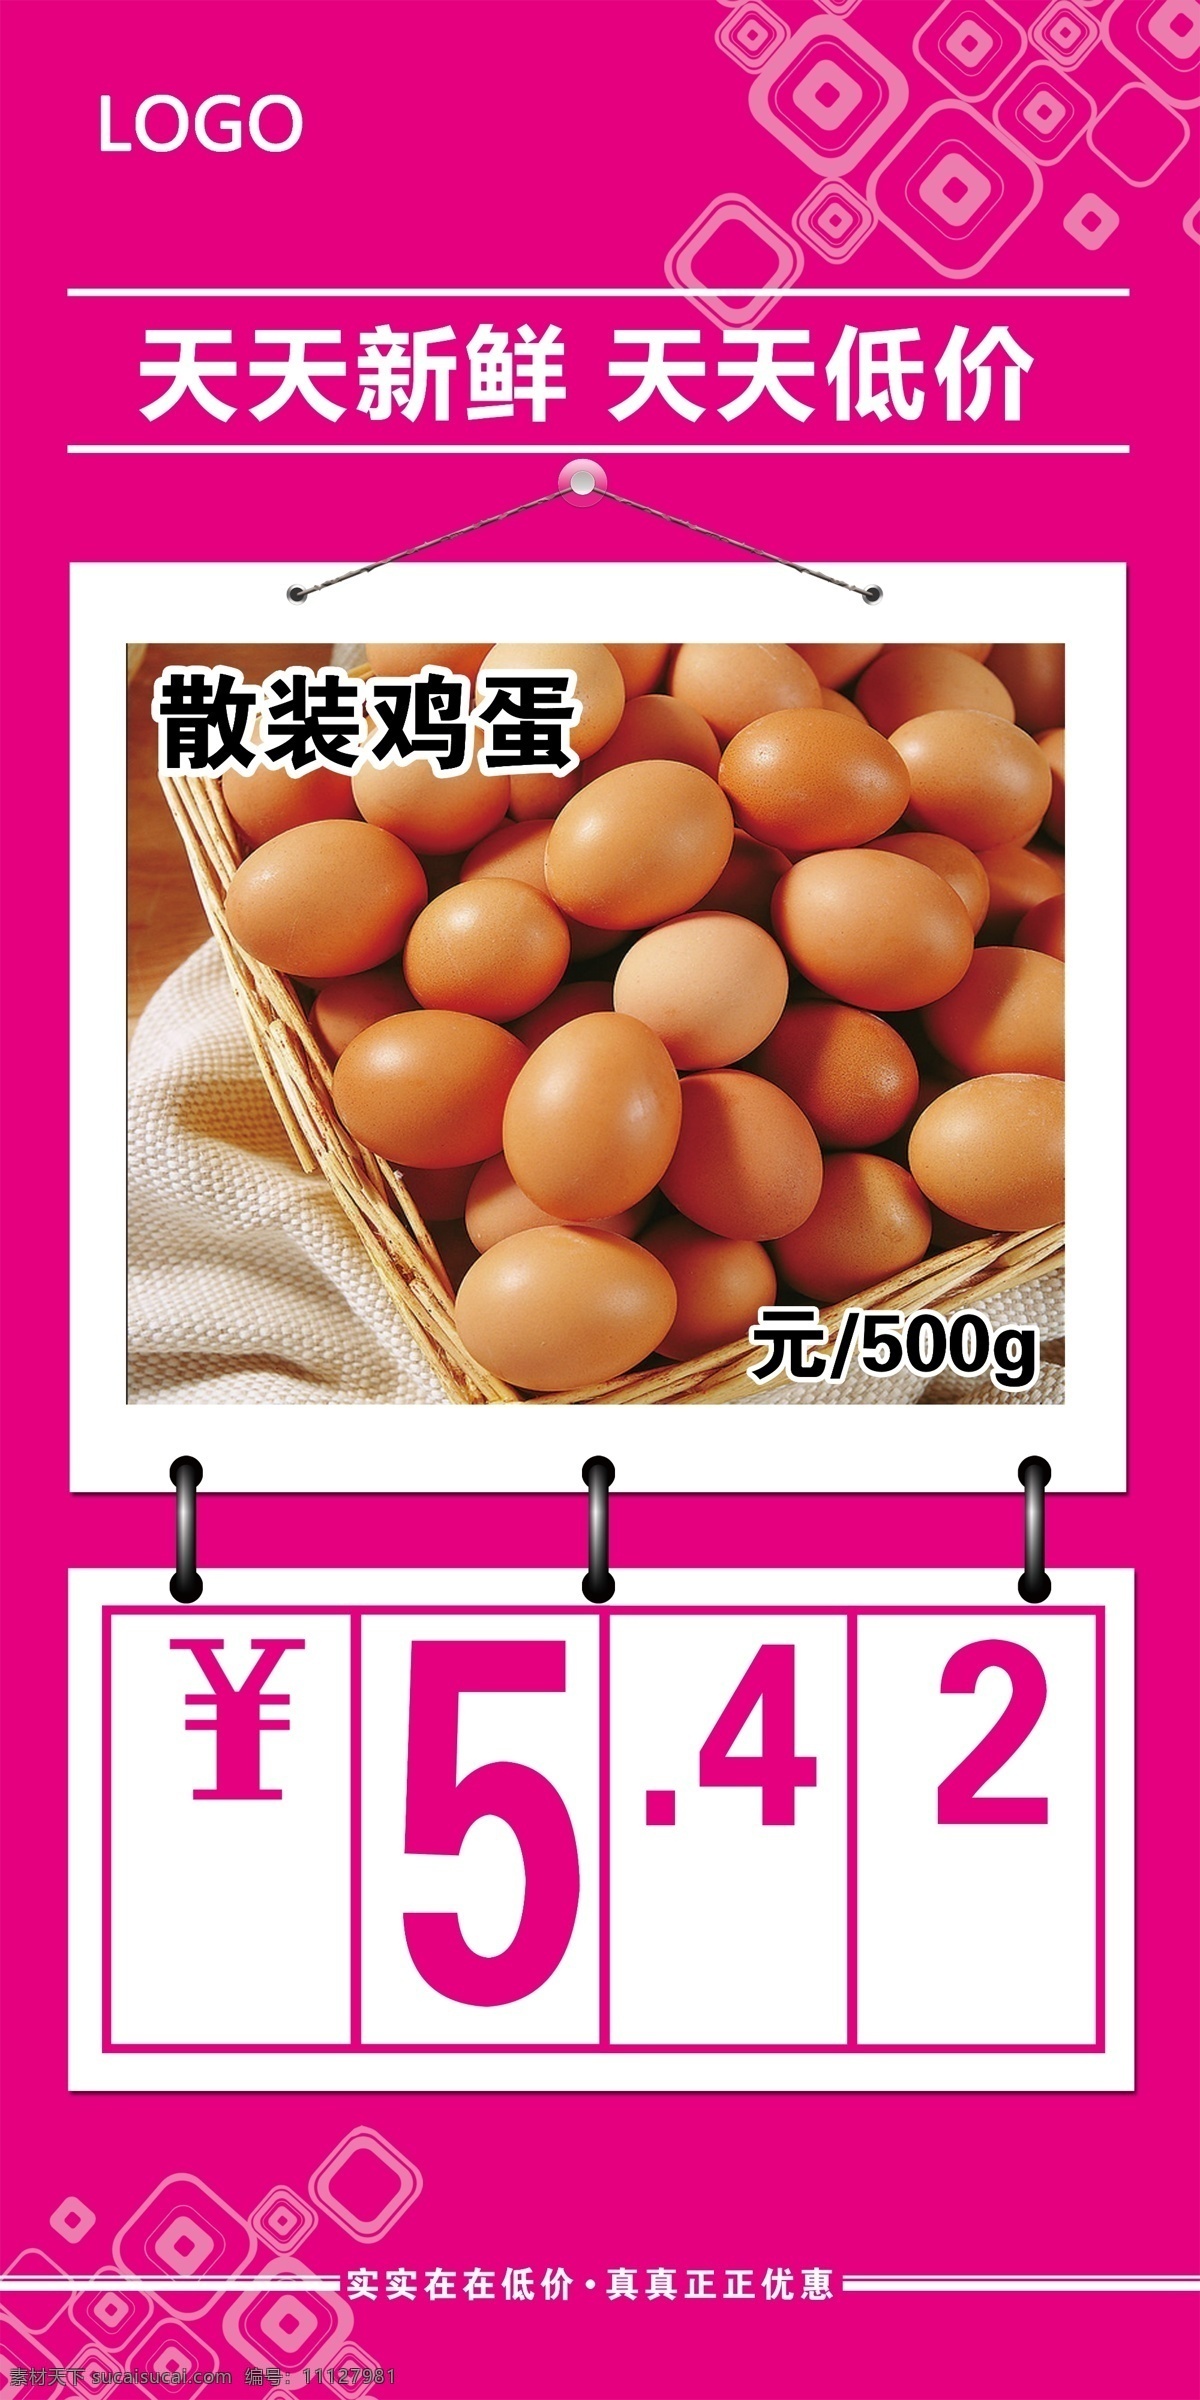 超市 鸡蛋 价格牌 吊 挂 吊挂 天天 新鲜 低价 招贴设计 紫色